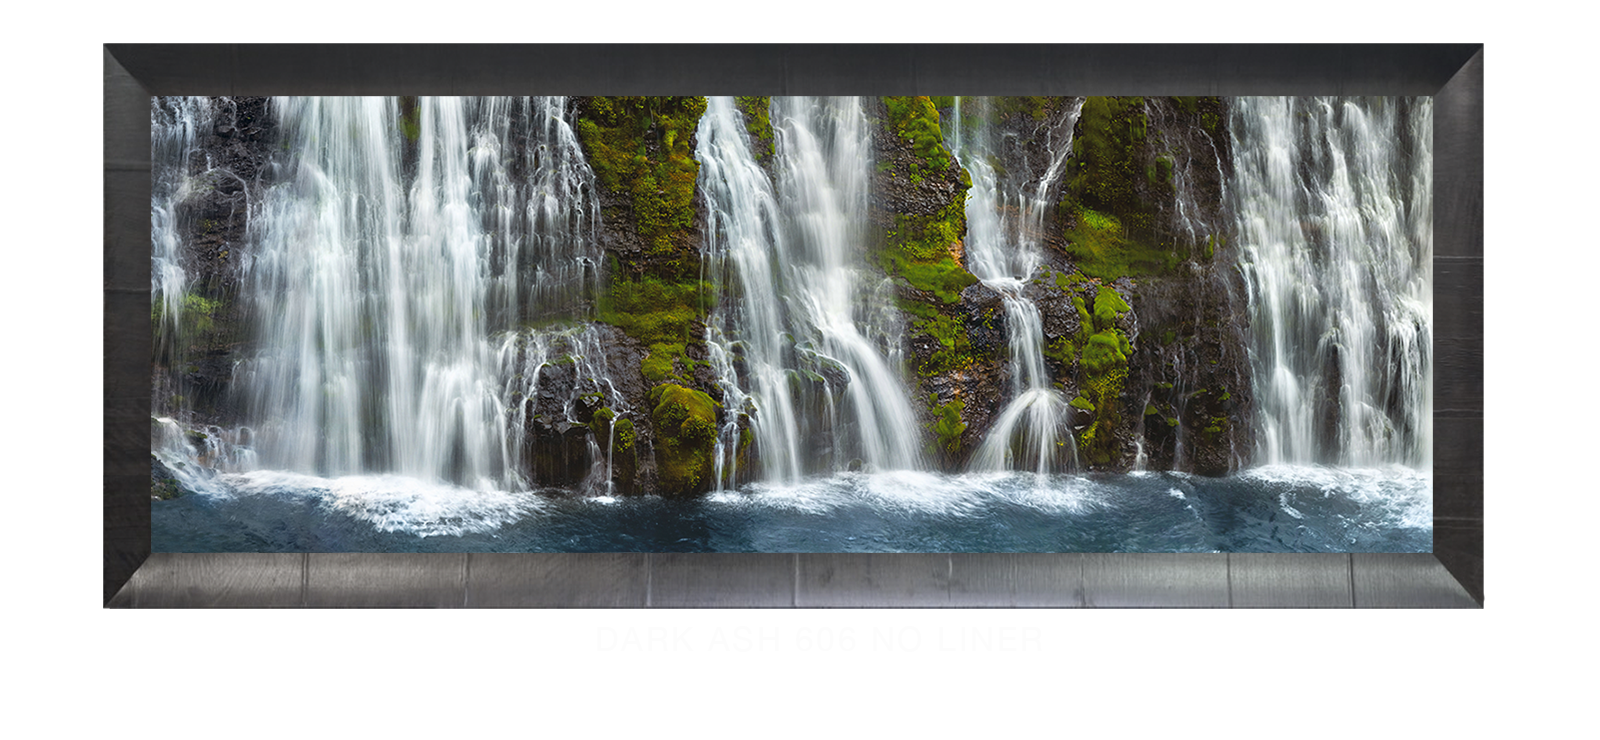 19_Dark Ash 606 w_No Liner